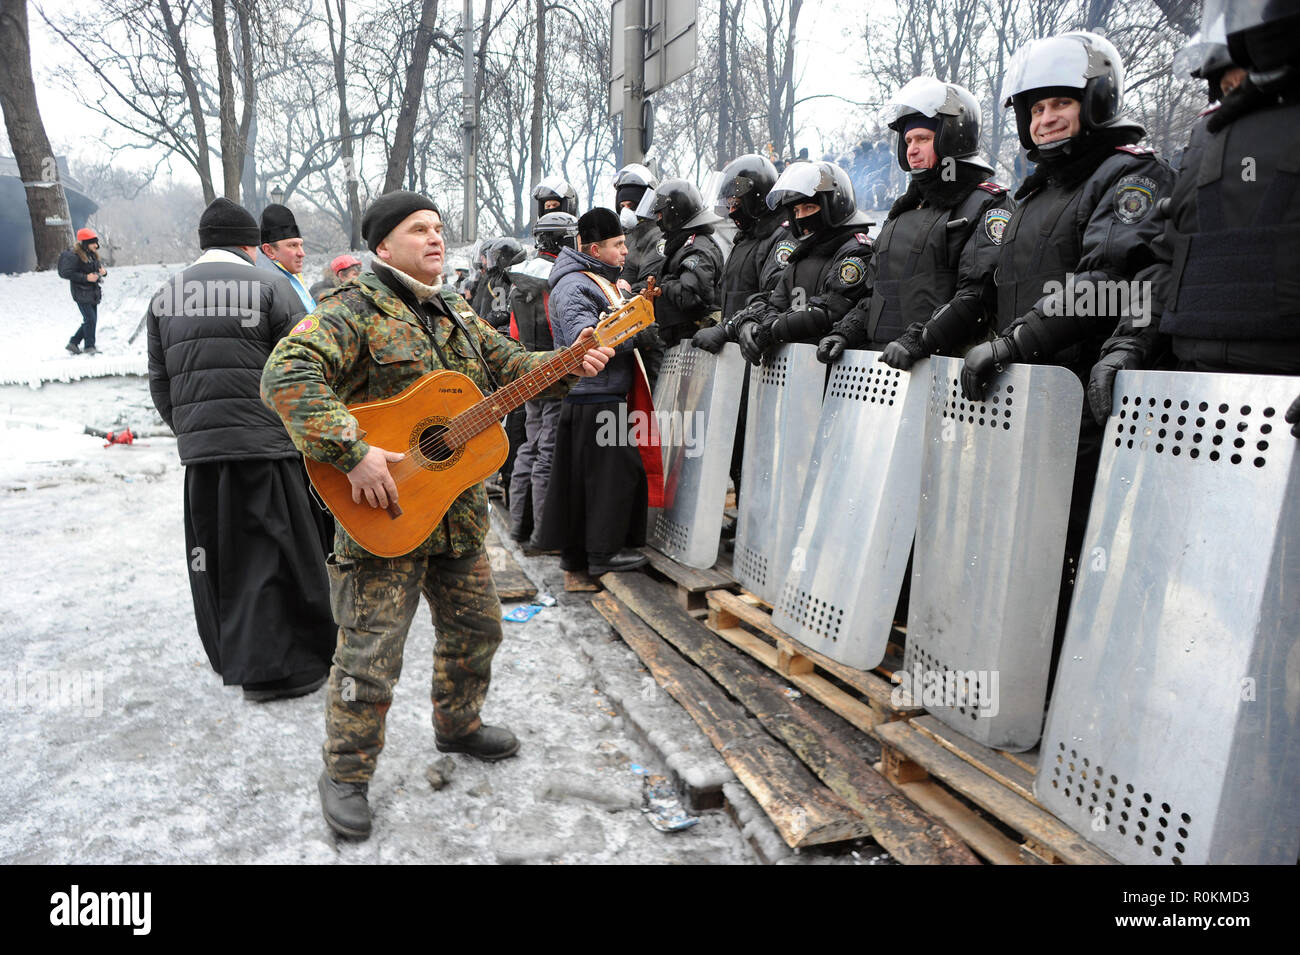 28 gennaio 2014 - Kiev, Ucraina: un manifestante suona la chitarra nella parte anteriore della polizia antisommossa custodendo il parlamento come un teso standoff continua tra il Maidan manifestanti e forze di polizia. Nazioni Unite manifestant joue de la guitare pour detendre l'atmosfera devant une rangee de polciiers anti-emeute pres de la place maidaïen a Kiev. *** La Francia / NESSUNA VENDITA A MEDIA FRANCESI *** Foto Stock